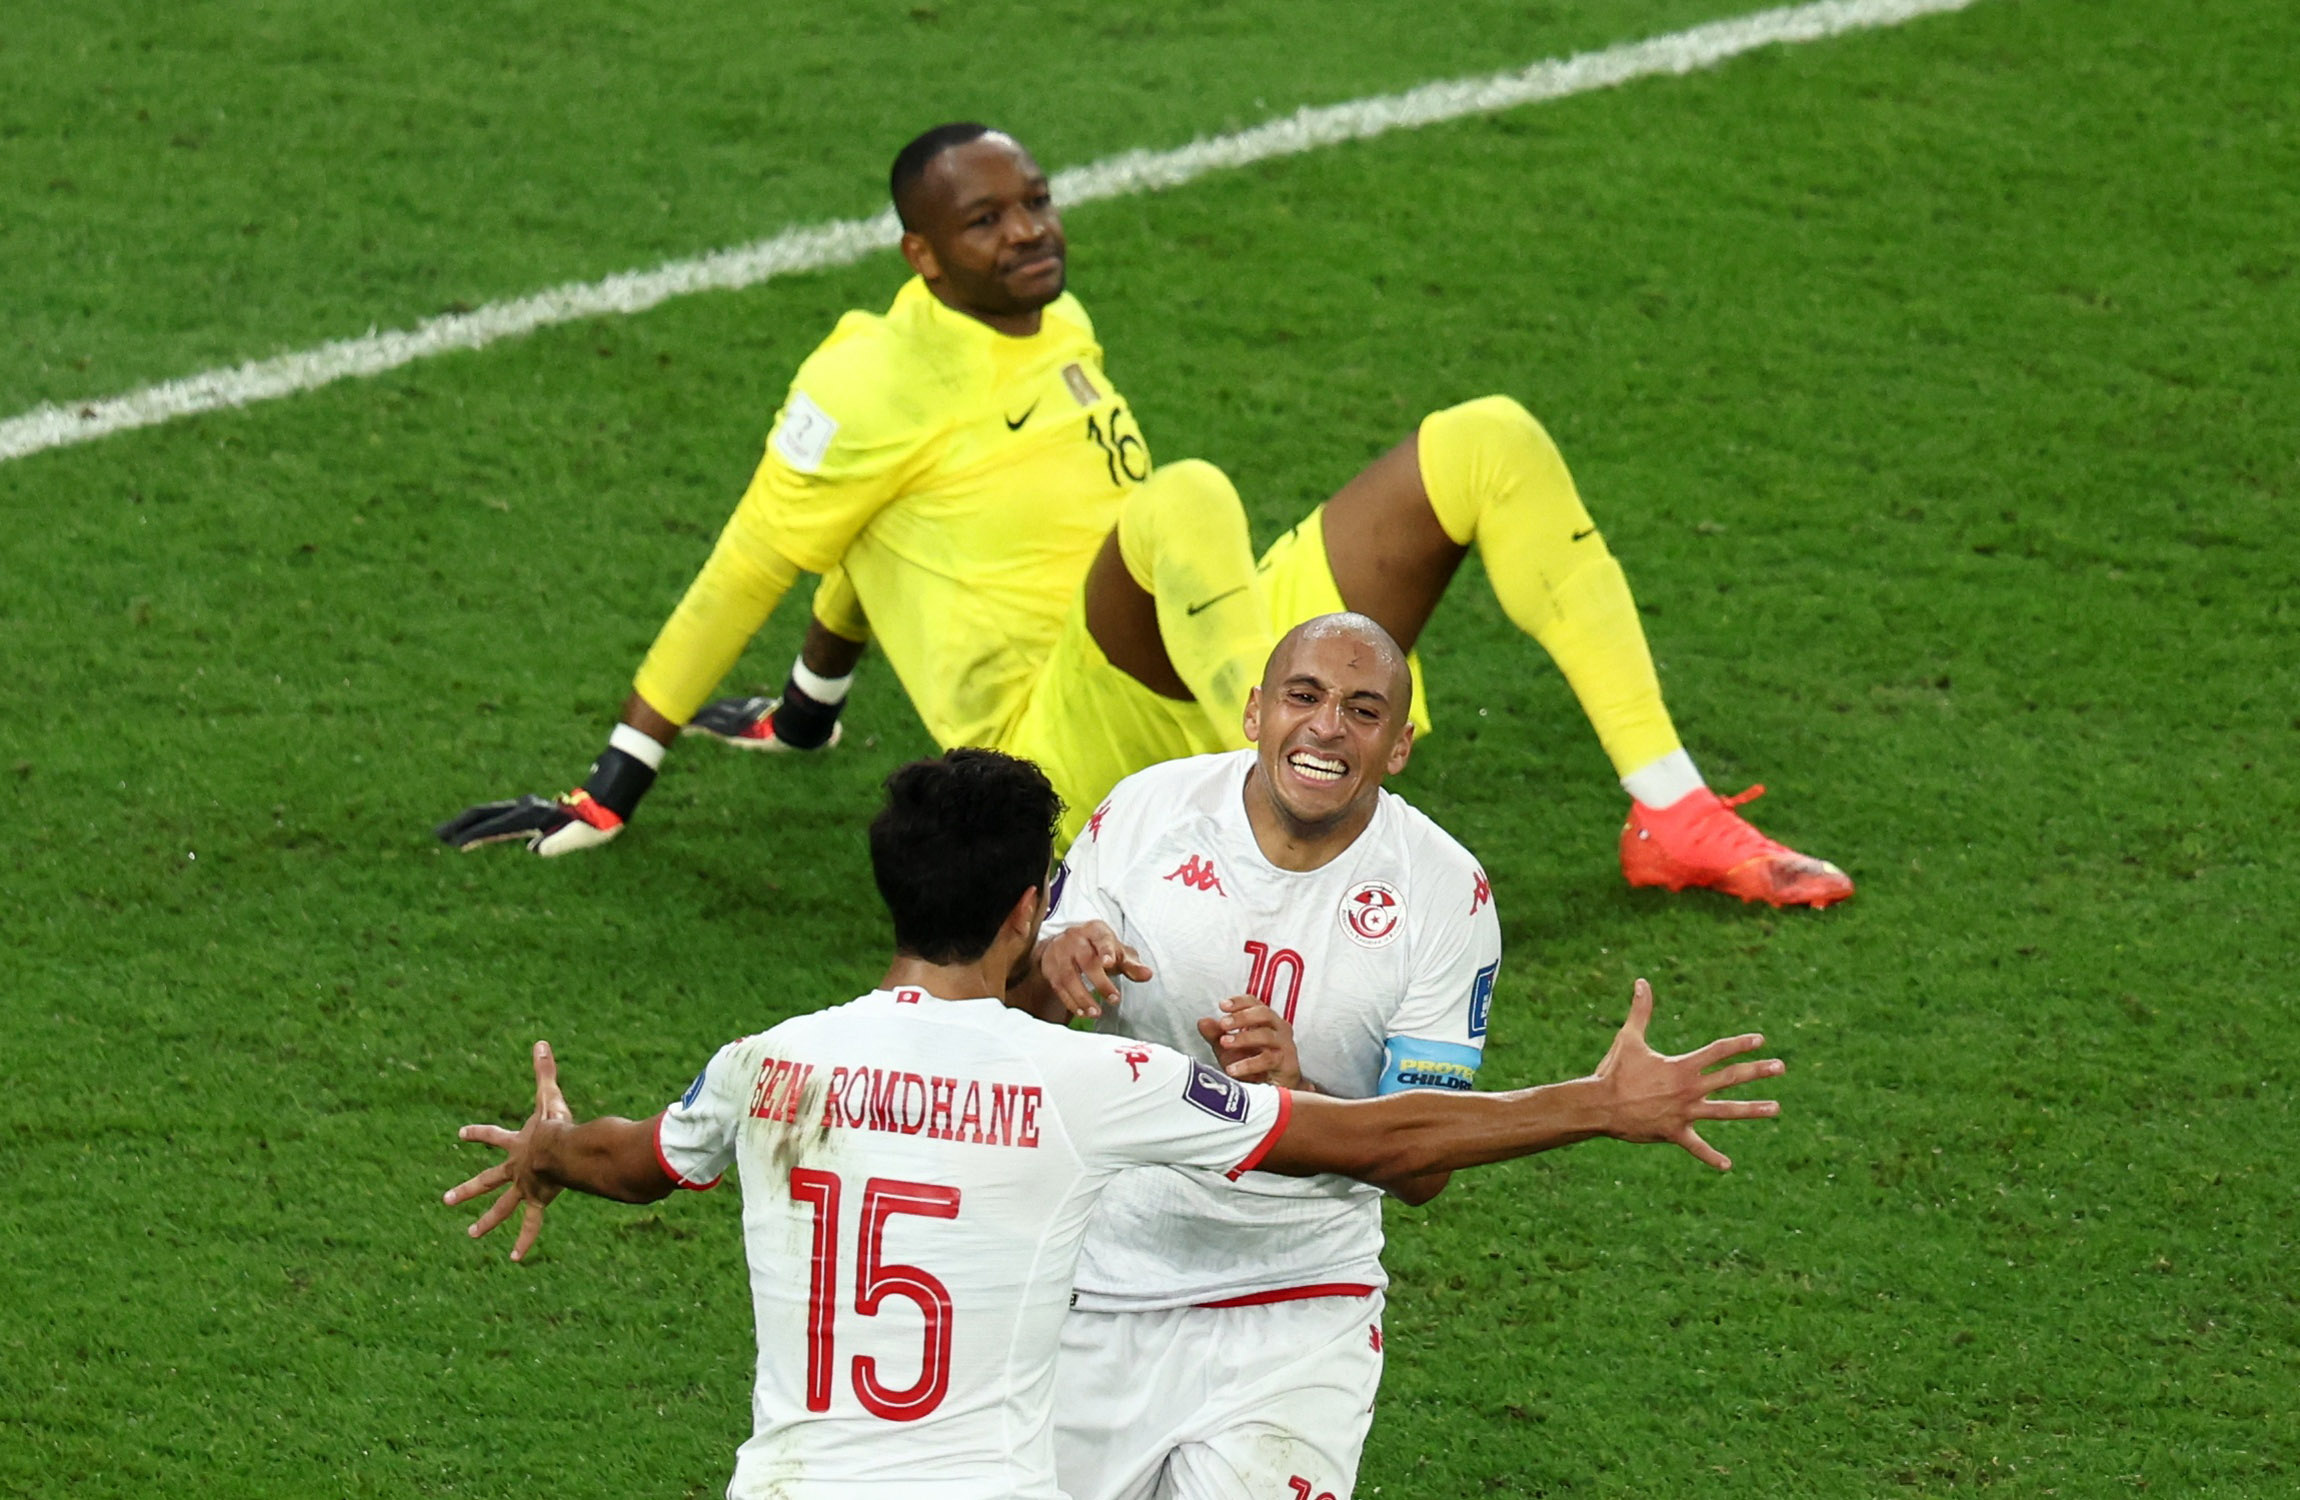 FIFA World Cup Qatar 2022 - Group D - Tunisia v France